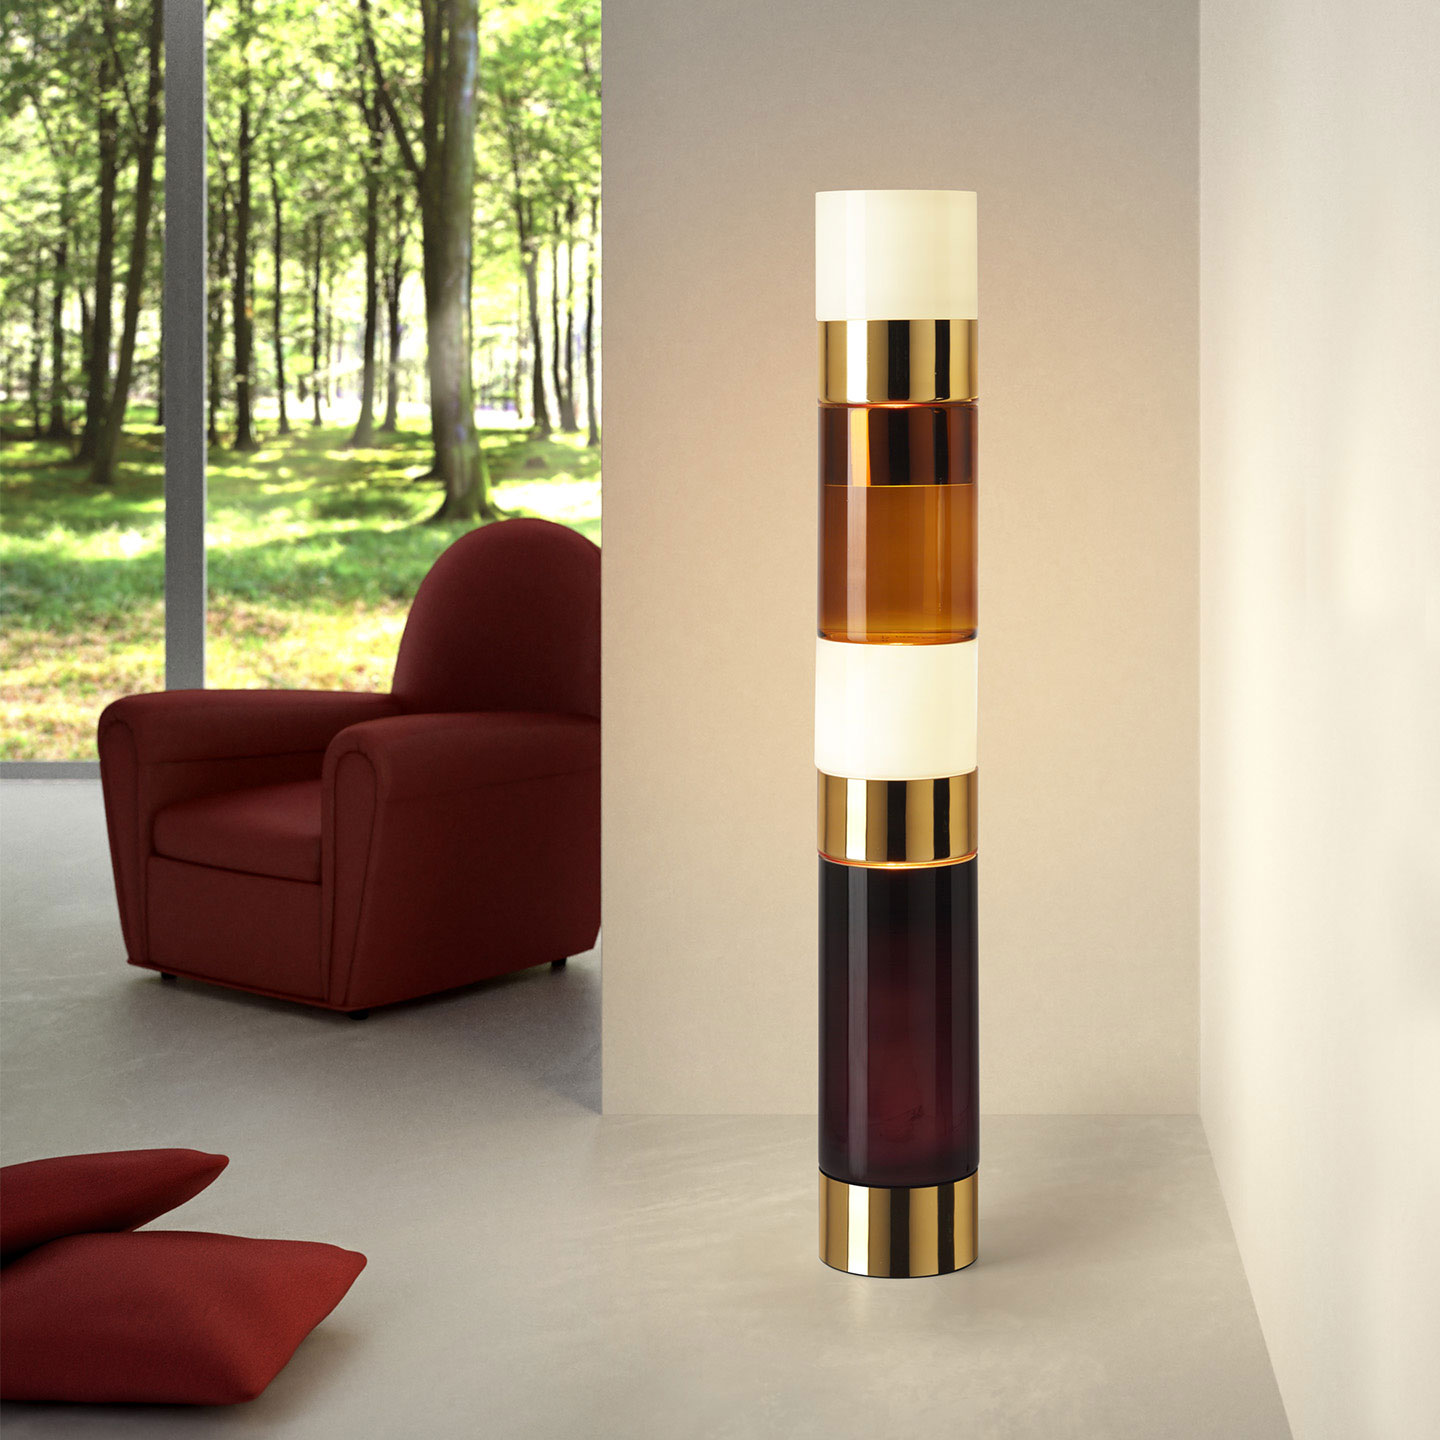 Straordinaria lampada da terra in vetro soffiato di Murano, forma cilindrica, multi colore. Design Rockwell Group. Consegna gratuita a domicilio.